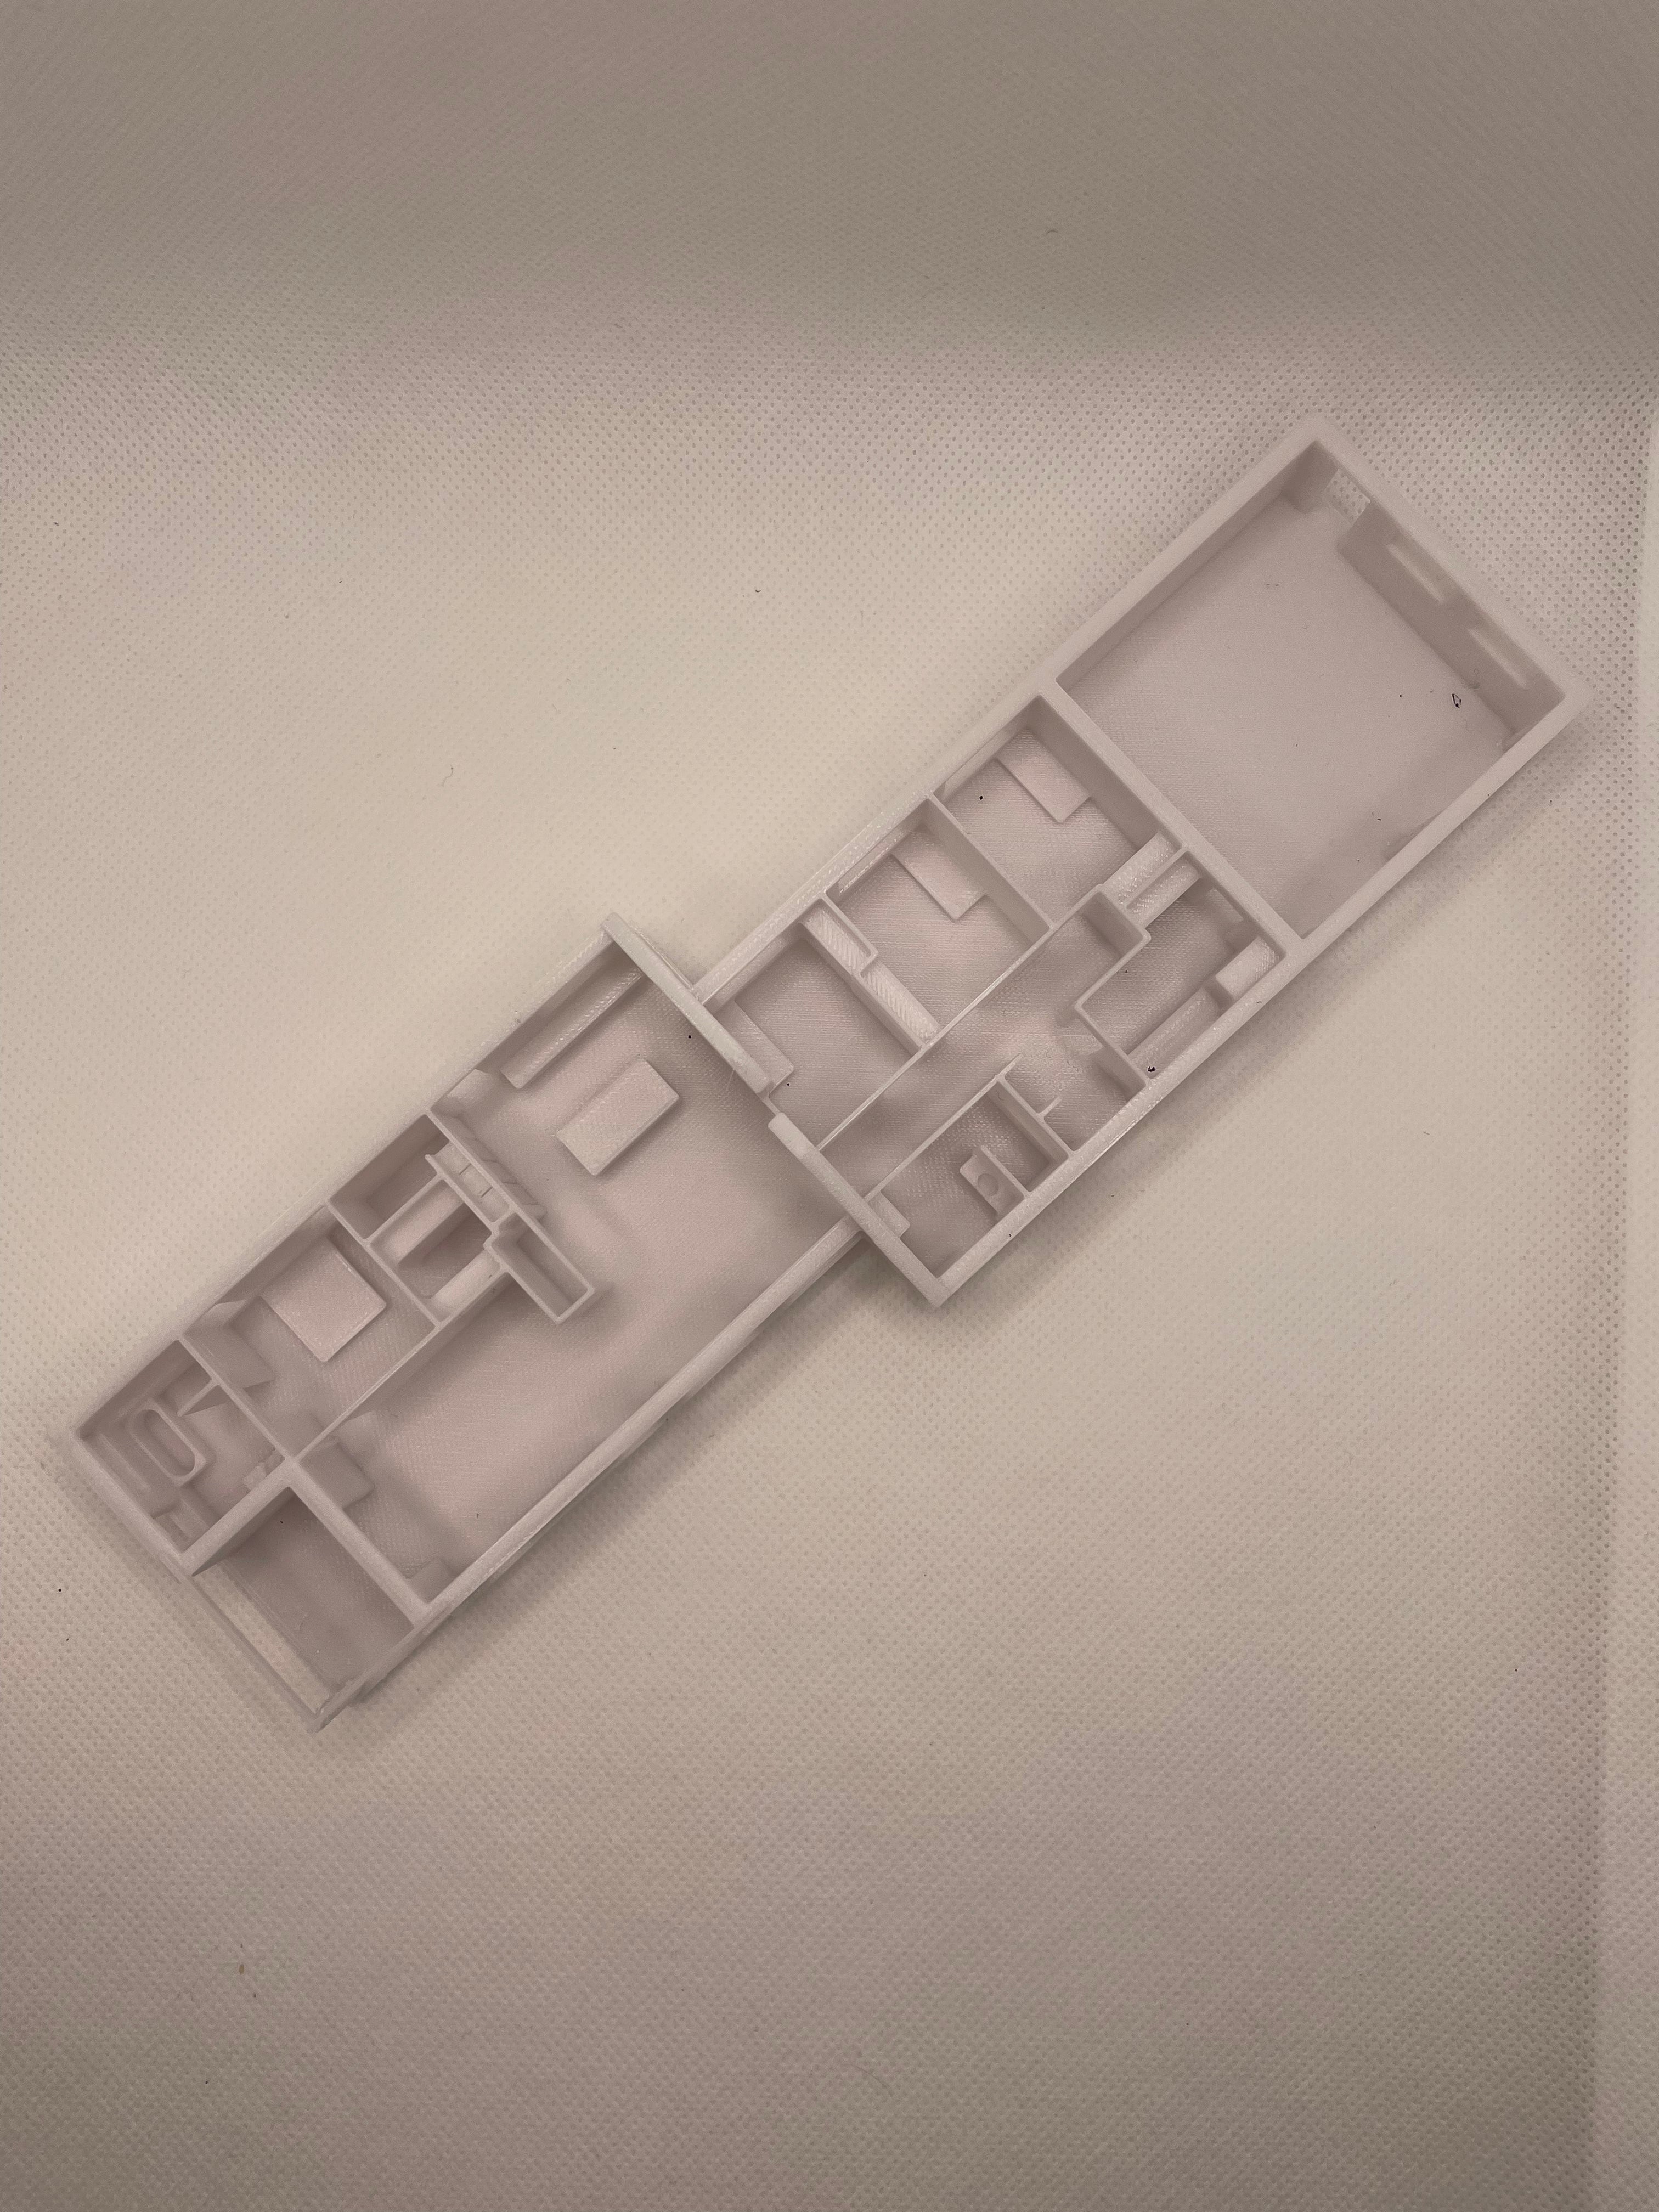 3D-utskrift av planritning från 2D-plan